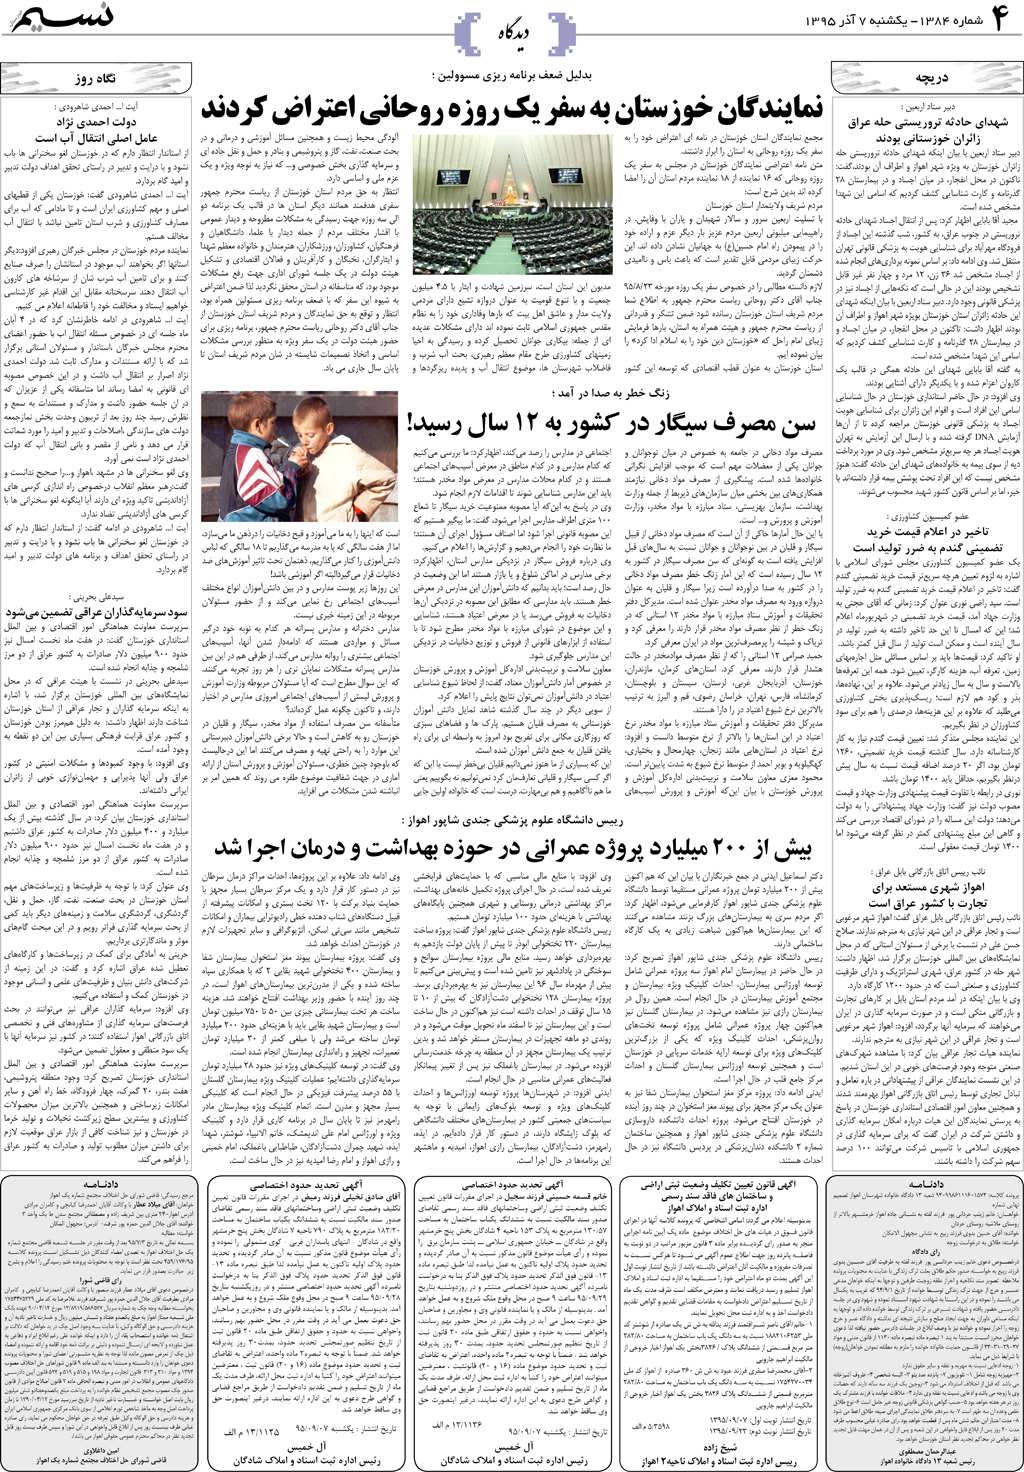 صفحه دیدگاه روزنامه نسیم شماره 1384